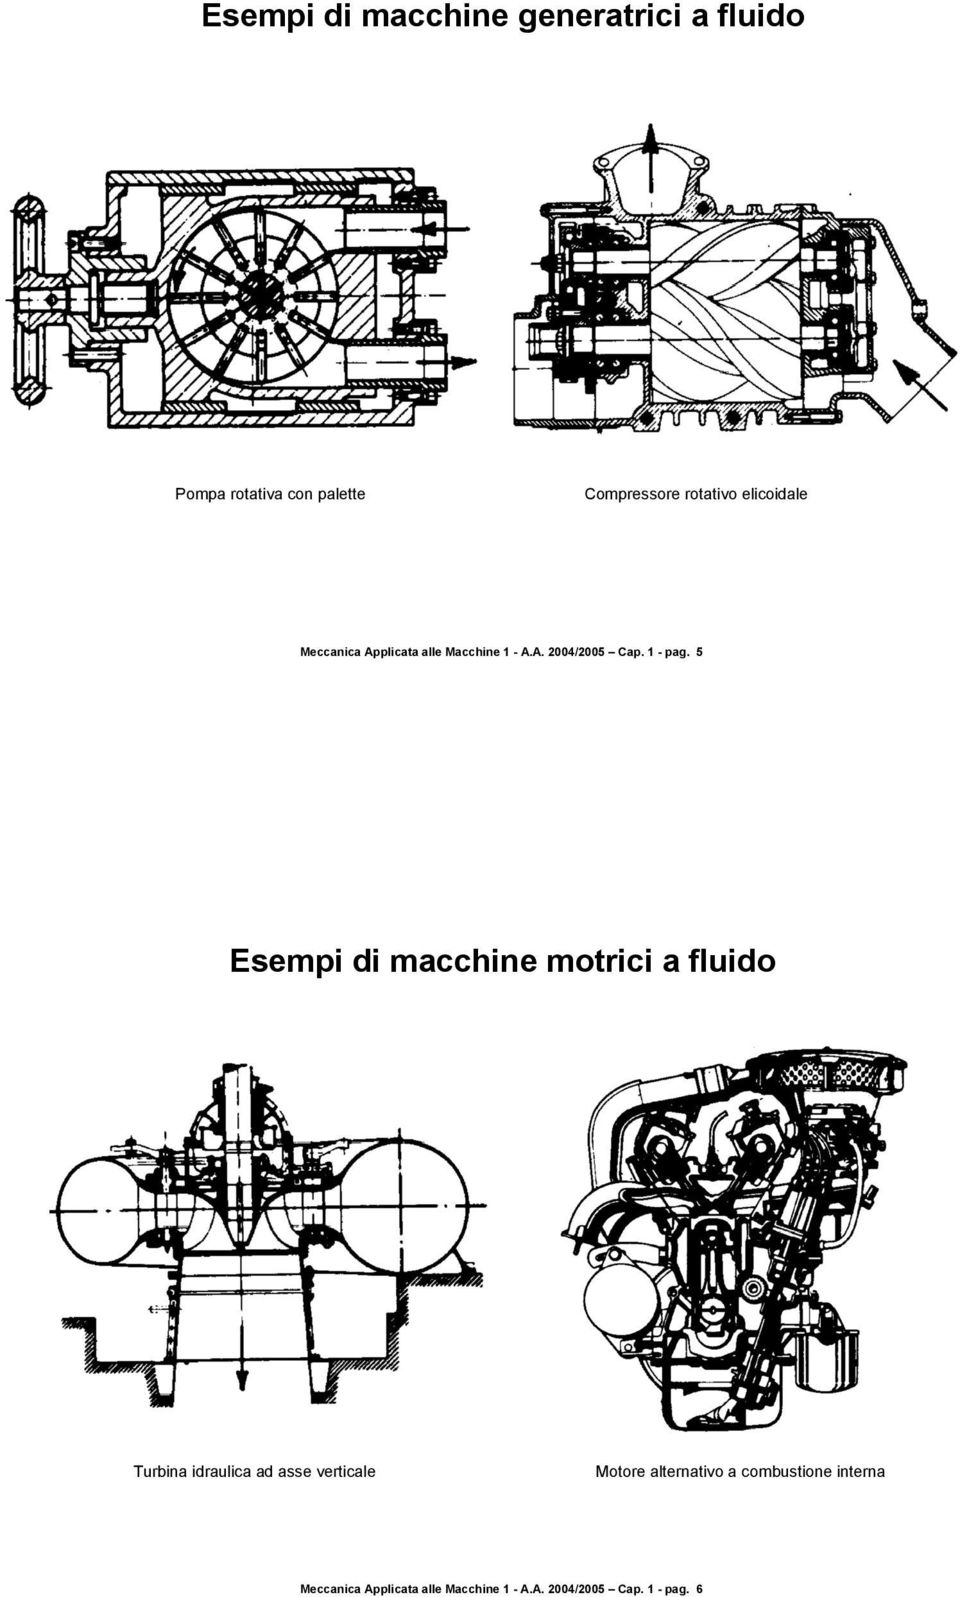 5 Esempi di macchine motrici a fluido Turbina idraulica ad asse verticale Motore